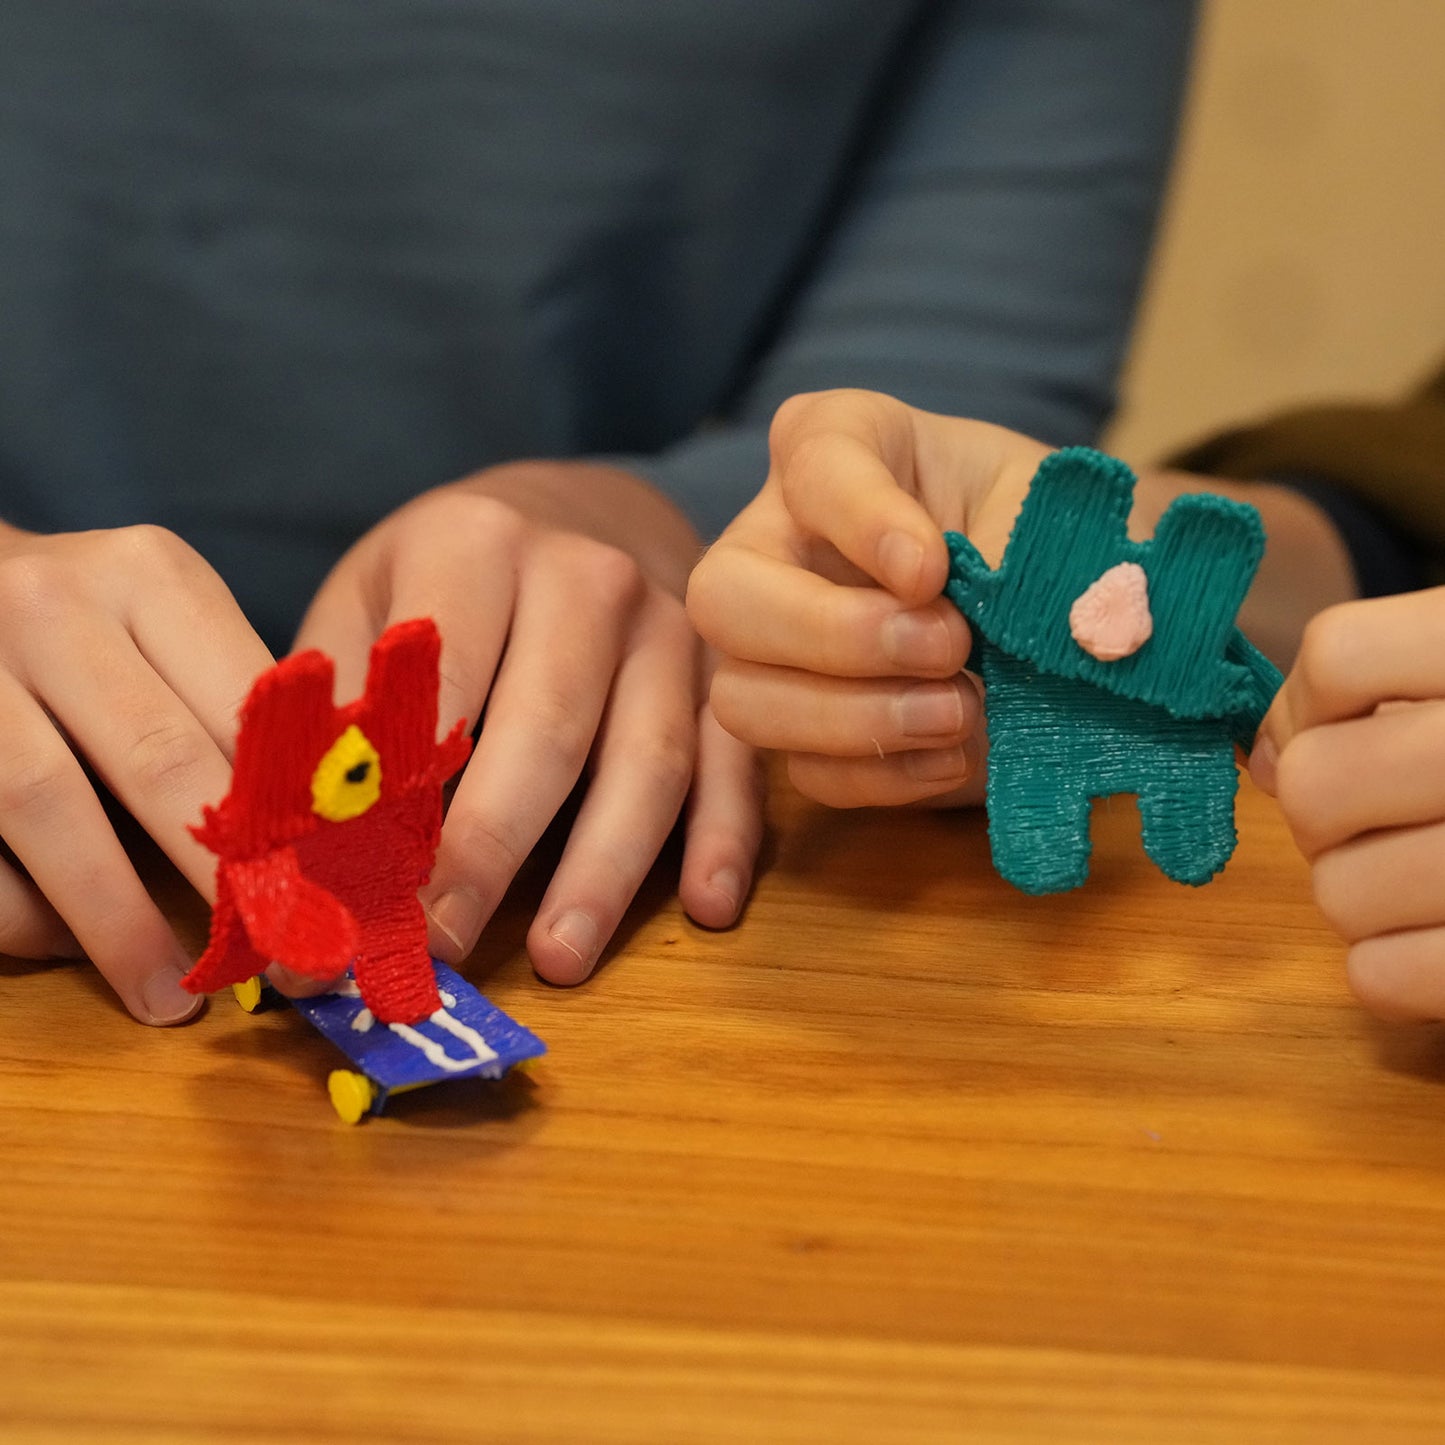 PIKA3D SUPER - 3D Printing Pen for young creators